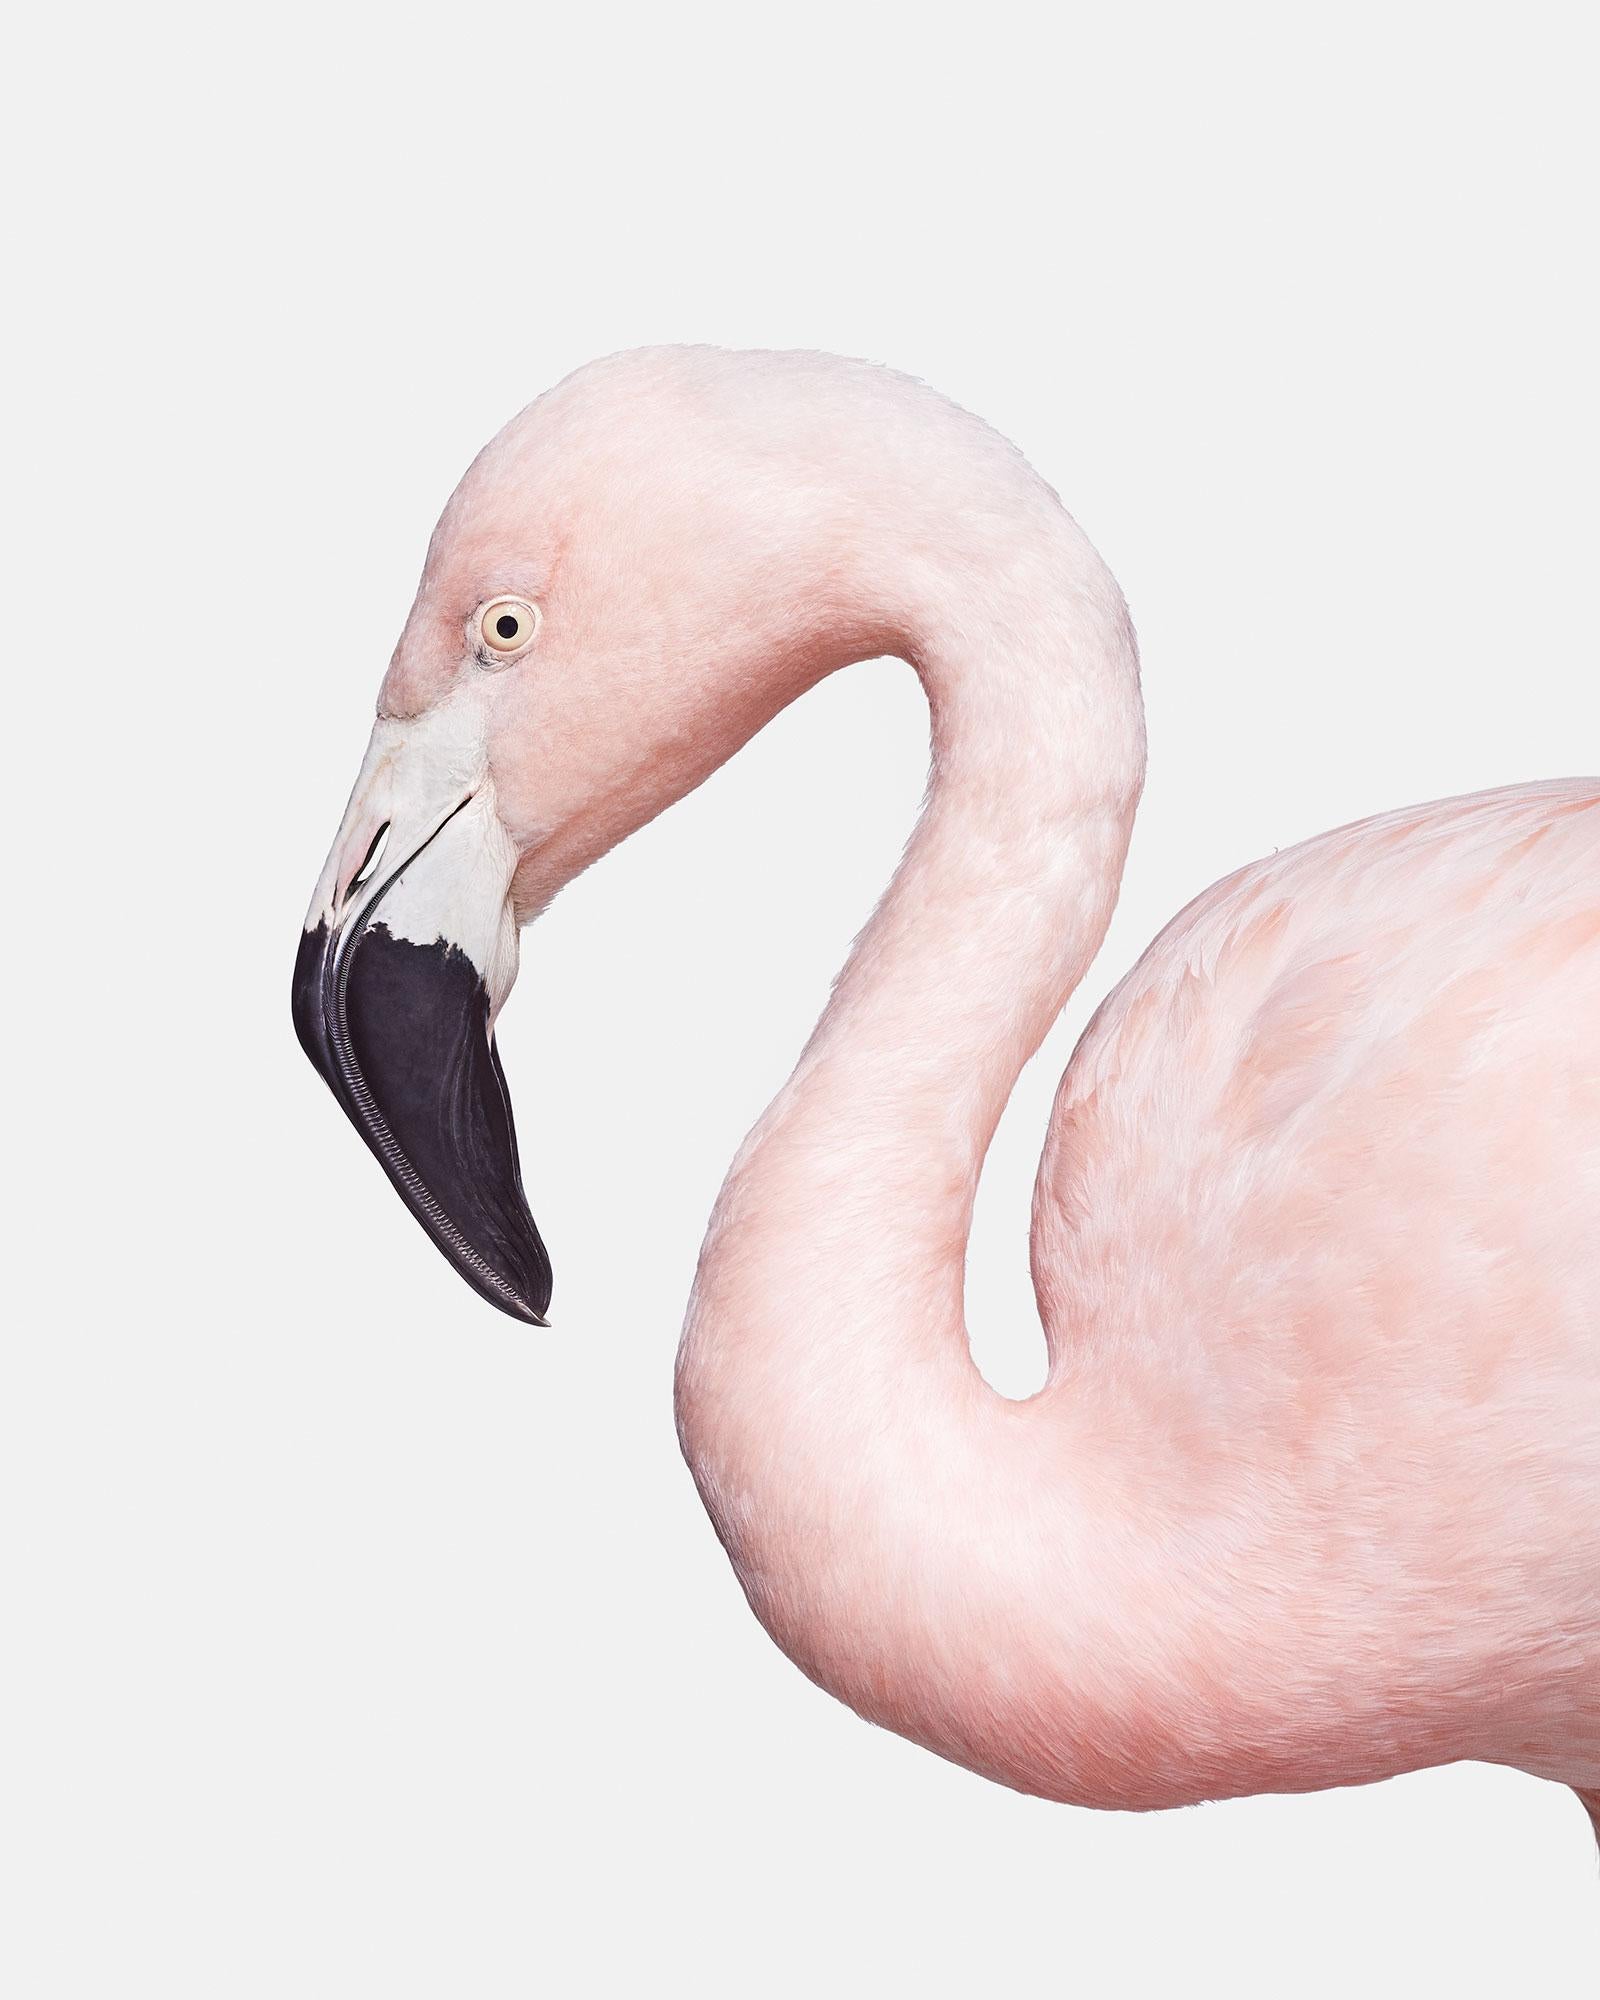 Flamingo Nr. 1
Verfügbare Größen:
37,5" x 30", Auflage von 15
50" x 40", Auflage von 10
60" x 48", Auflage von 5

Alejandra:
Vor Alejandra mussten wir den Hut ziehen, denn Mutter Natur ist immer wieder beeindruckend, und die Farbe und Form dieser